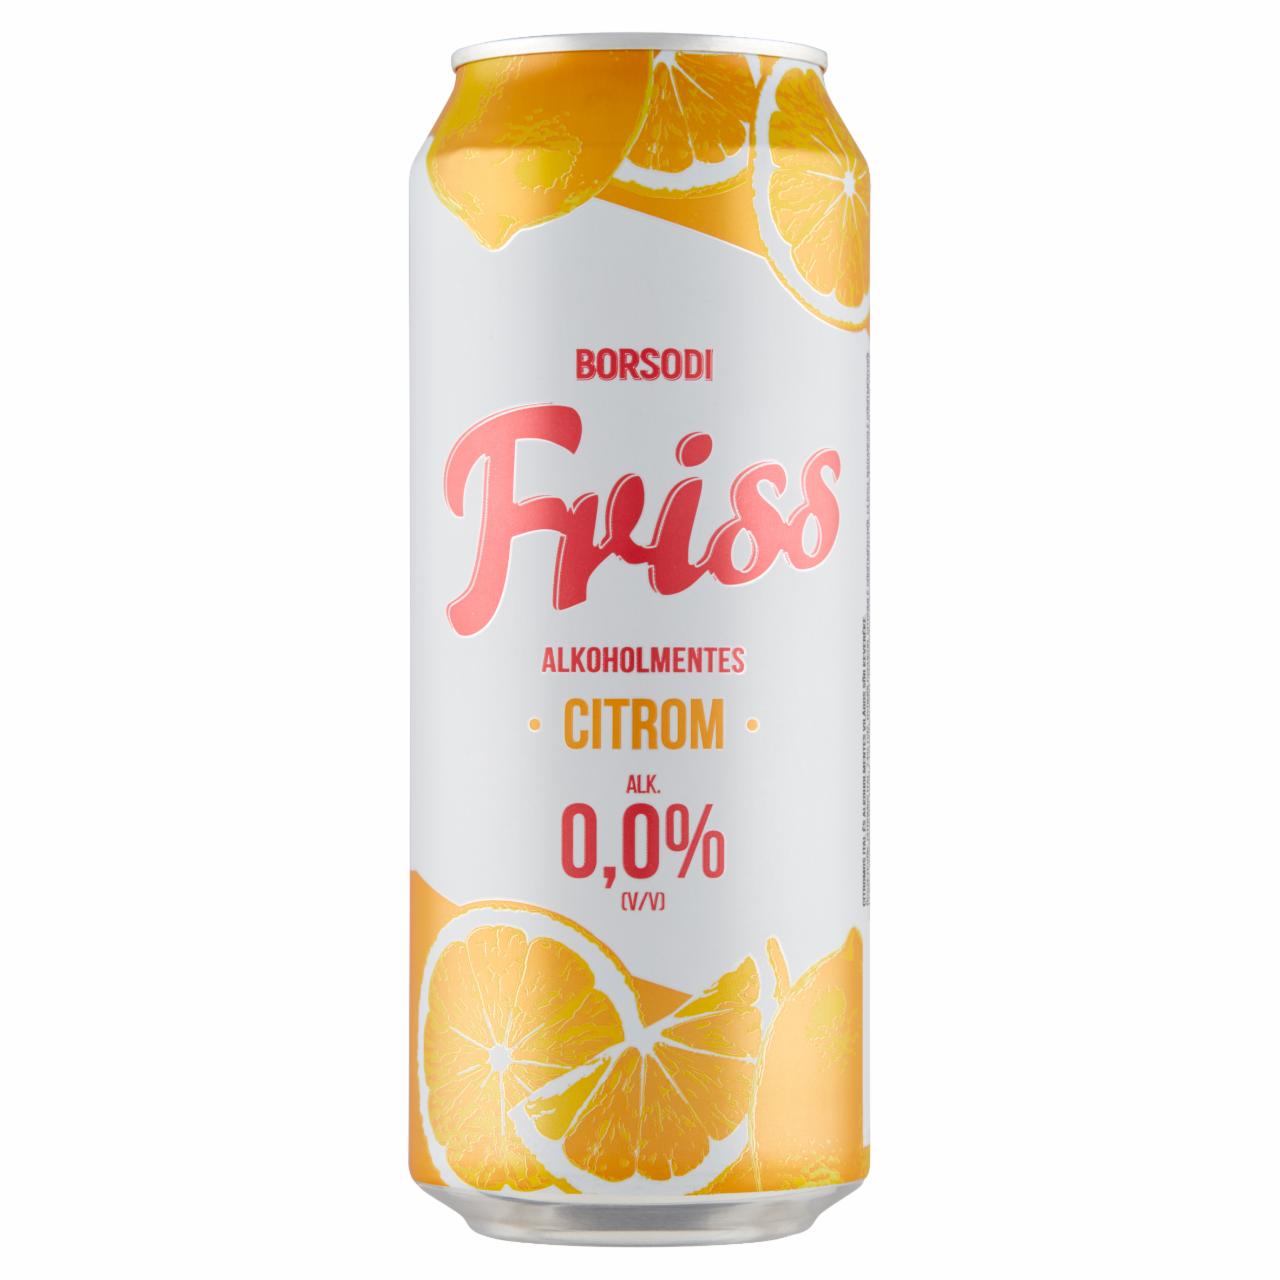 Képek - Borsodi Friss 0,0% citromos ital és alkoholmentes világos sör keveréke 0,5 l